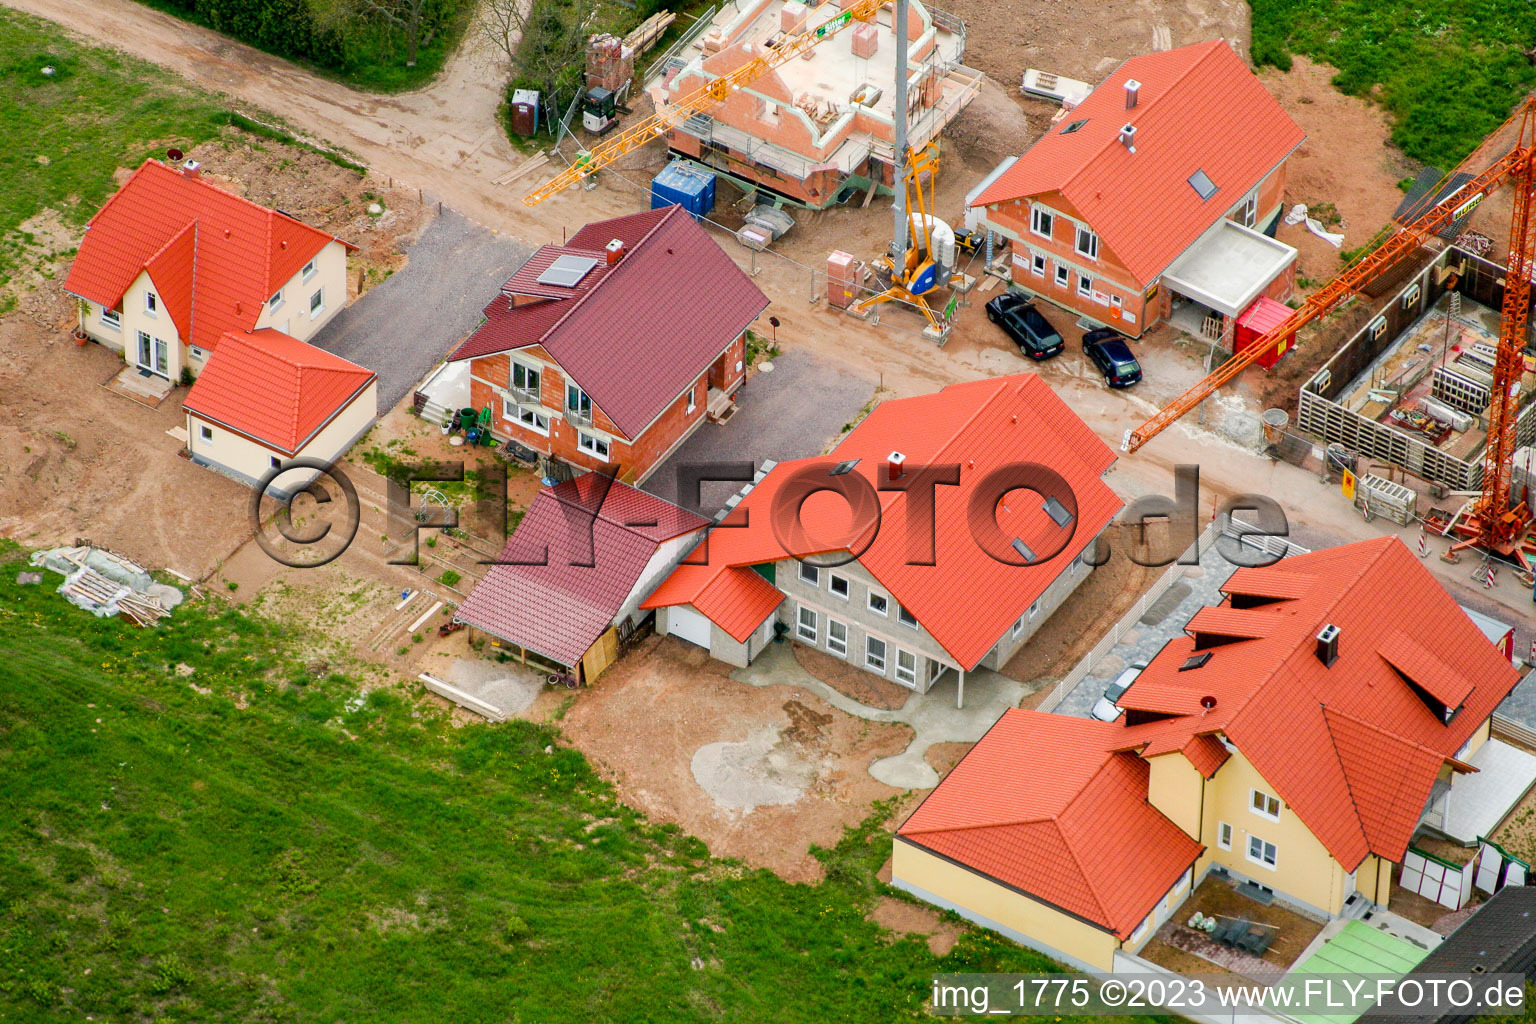 Photographie aérienne de Nouvelle zone de développement à Barbelroth dans le département Rhénanie-Palatinat, Allemagne